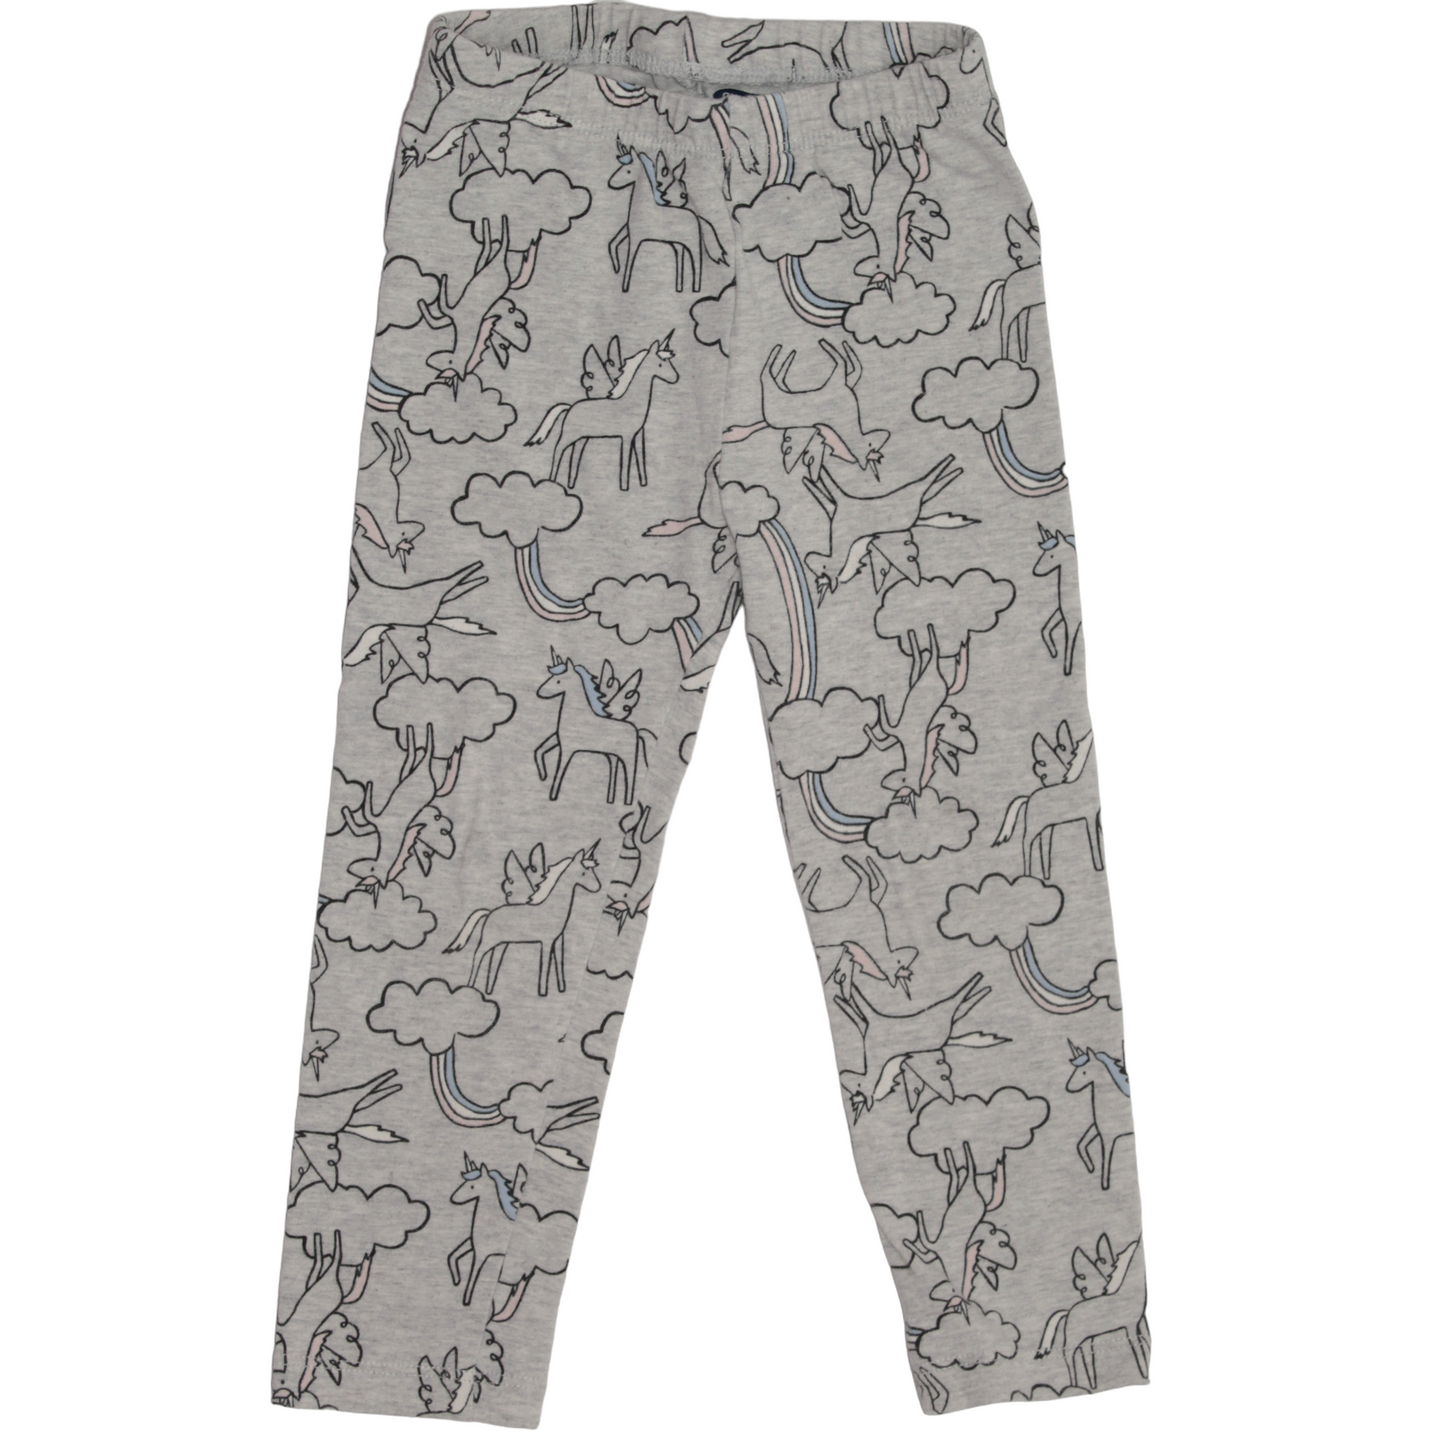 Pantalón gris con unicornios 2 años